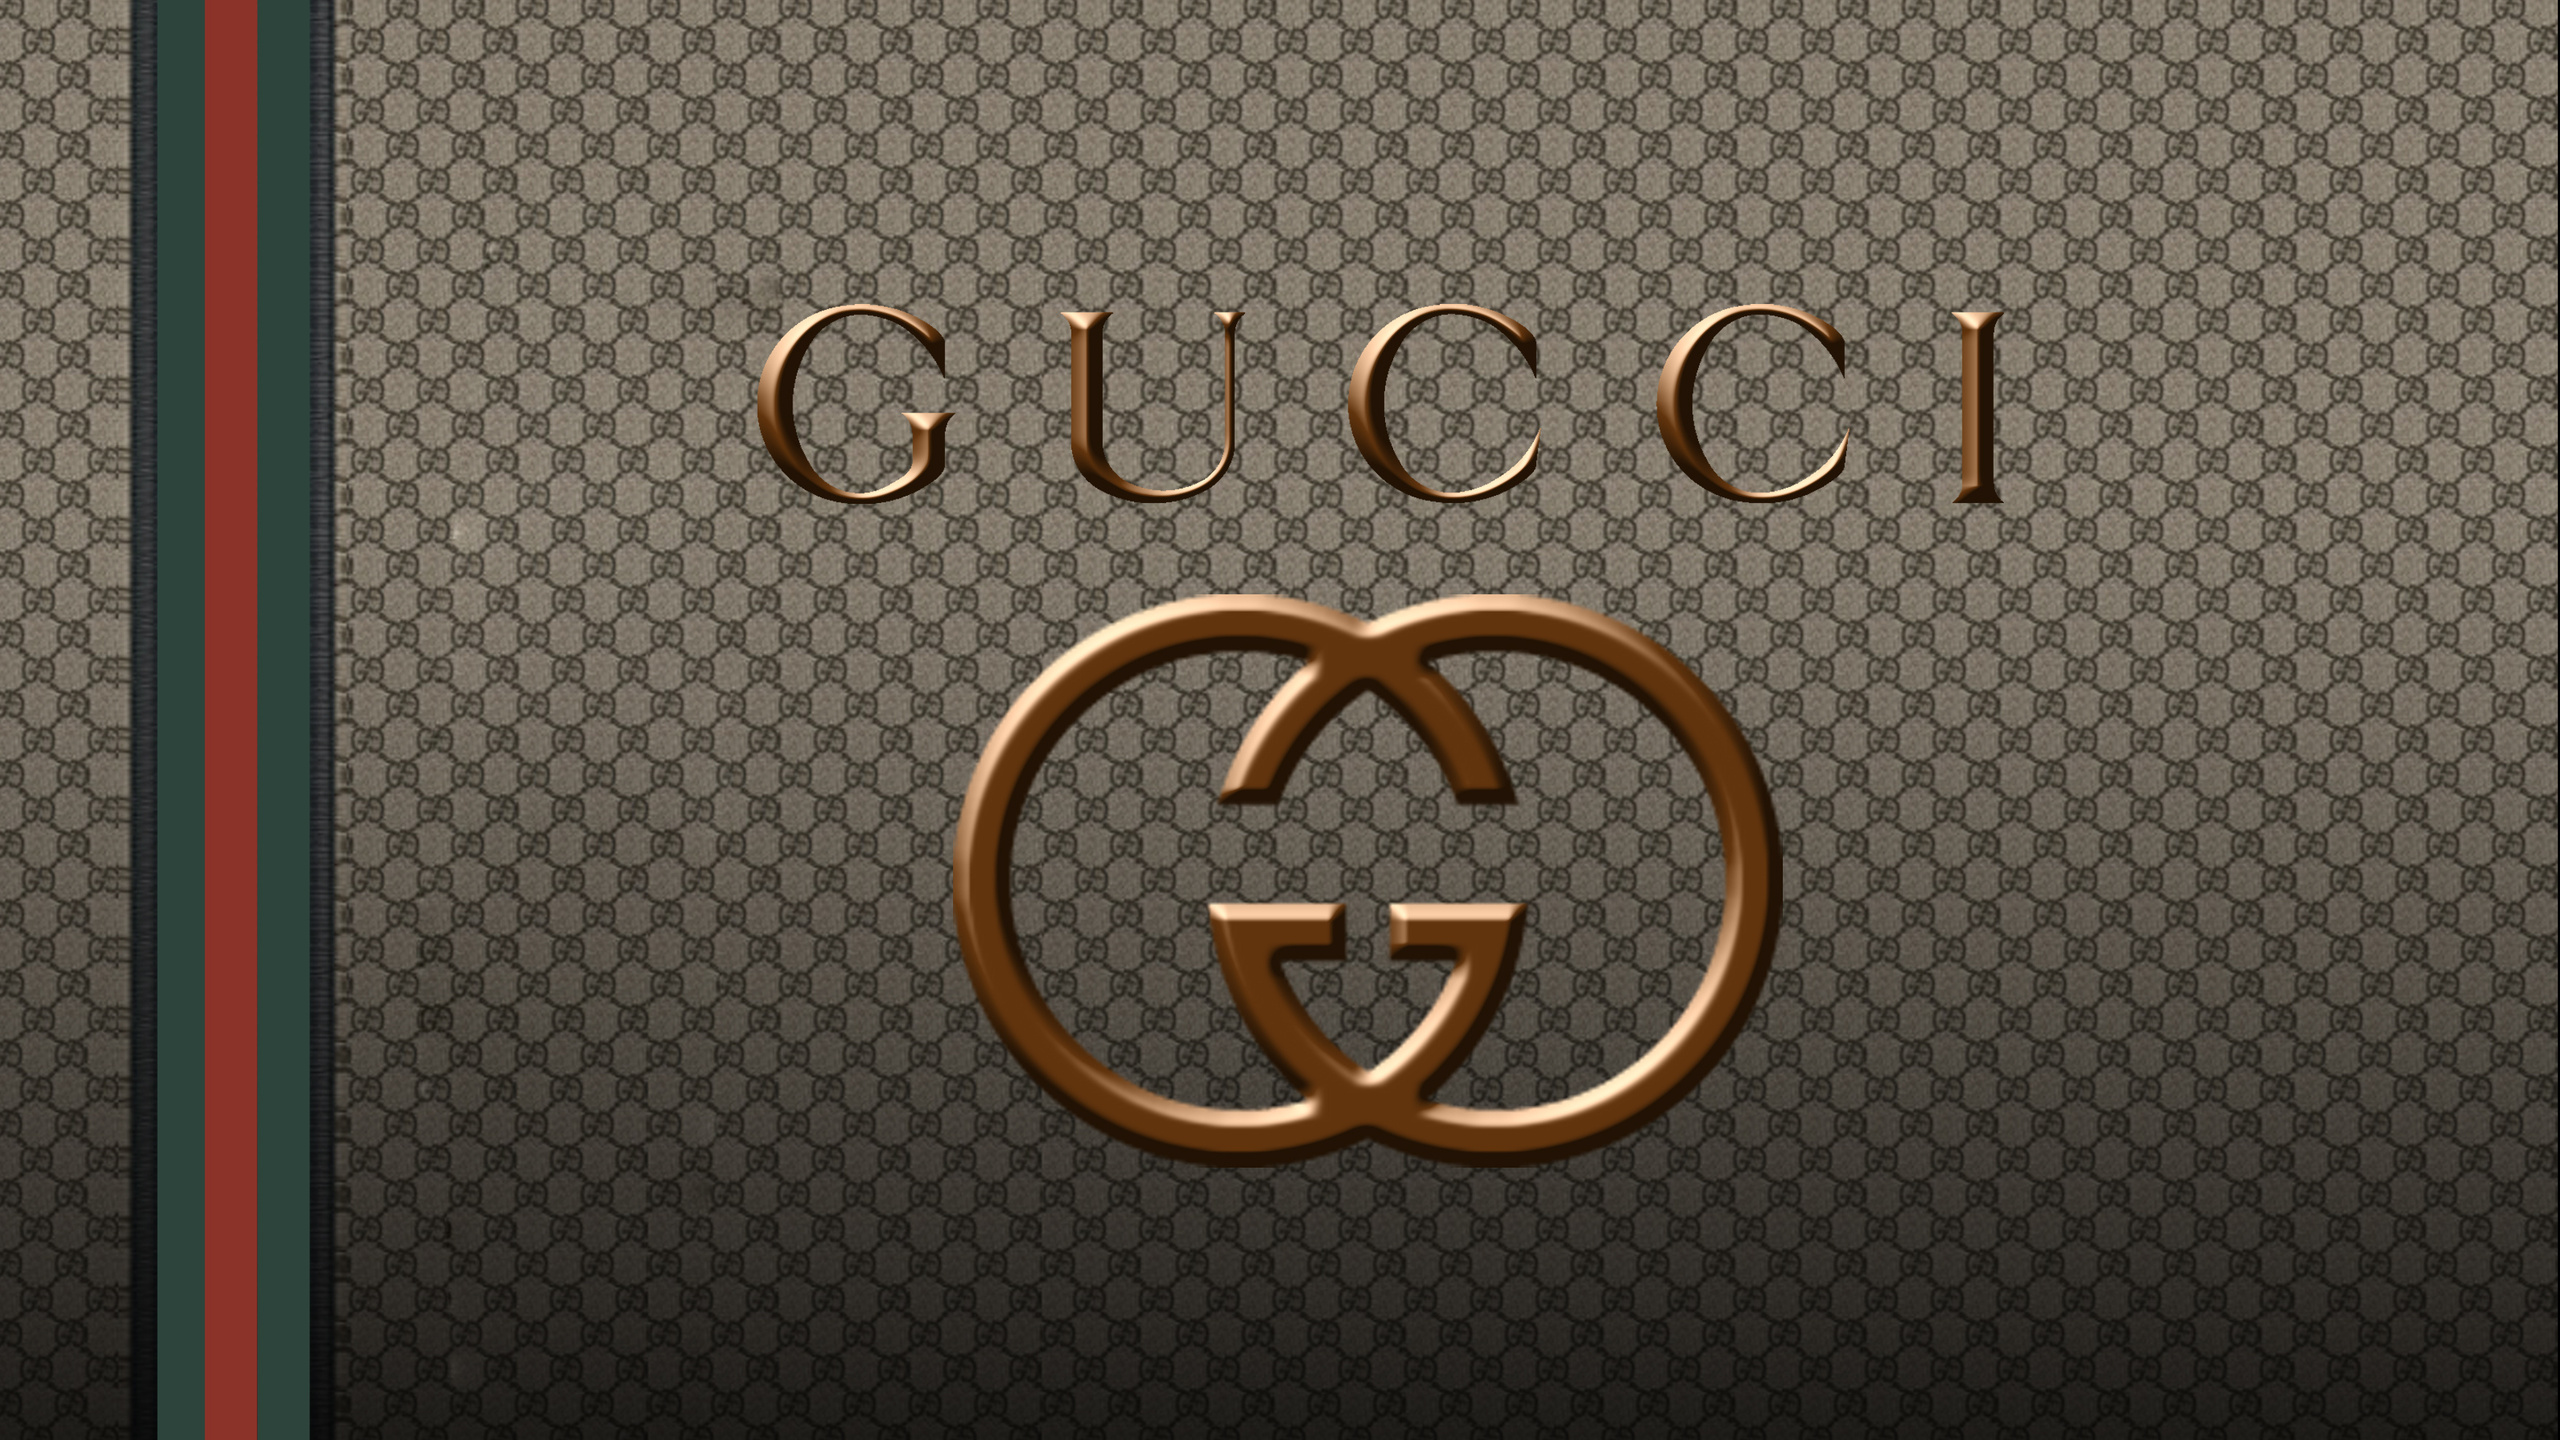 Gucci logo wallpaper